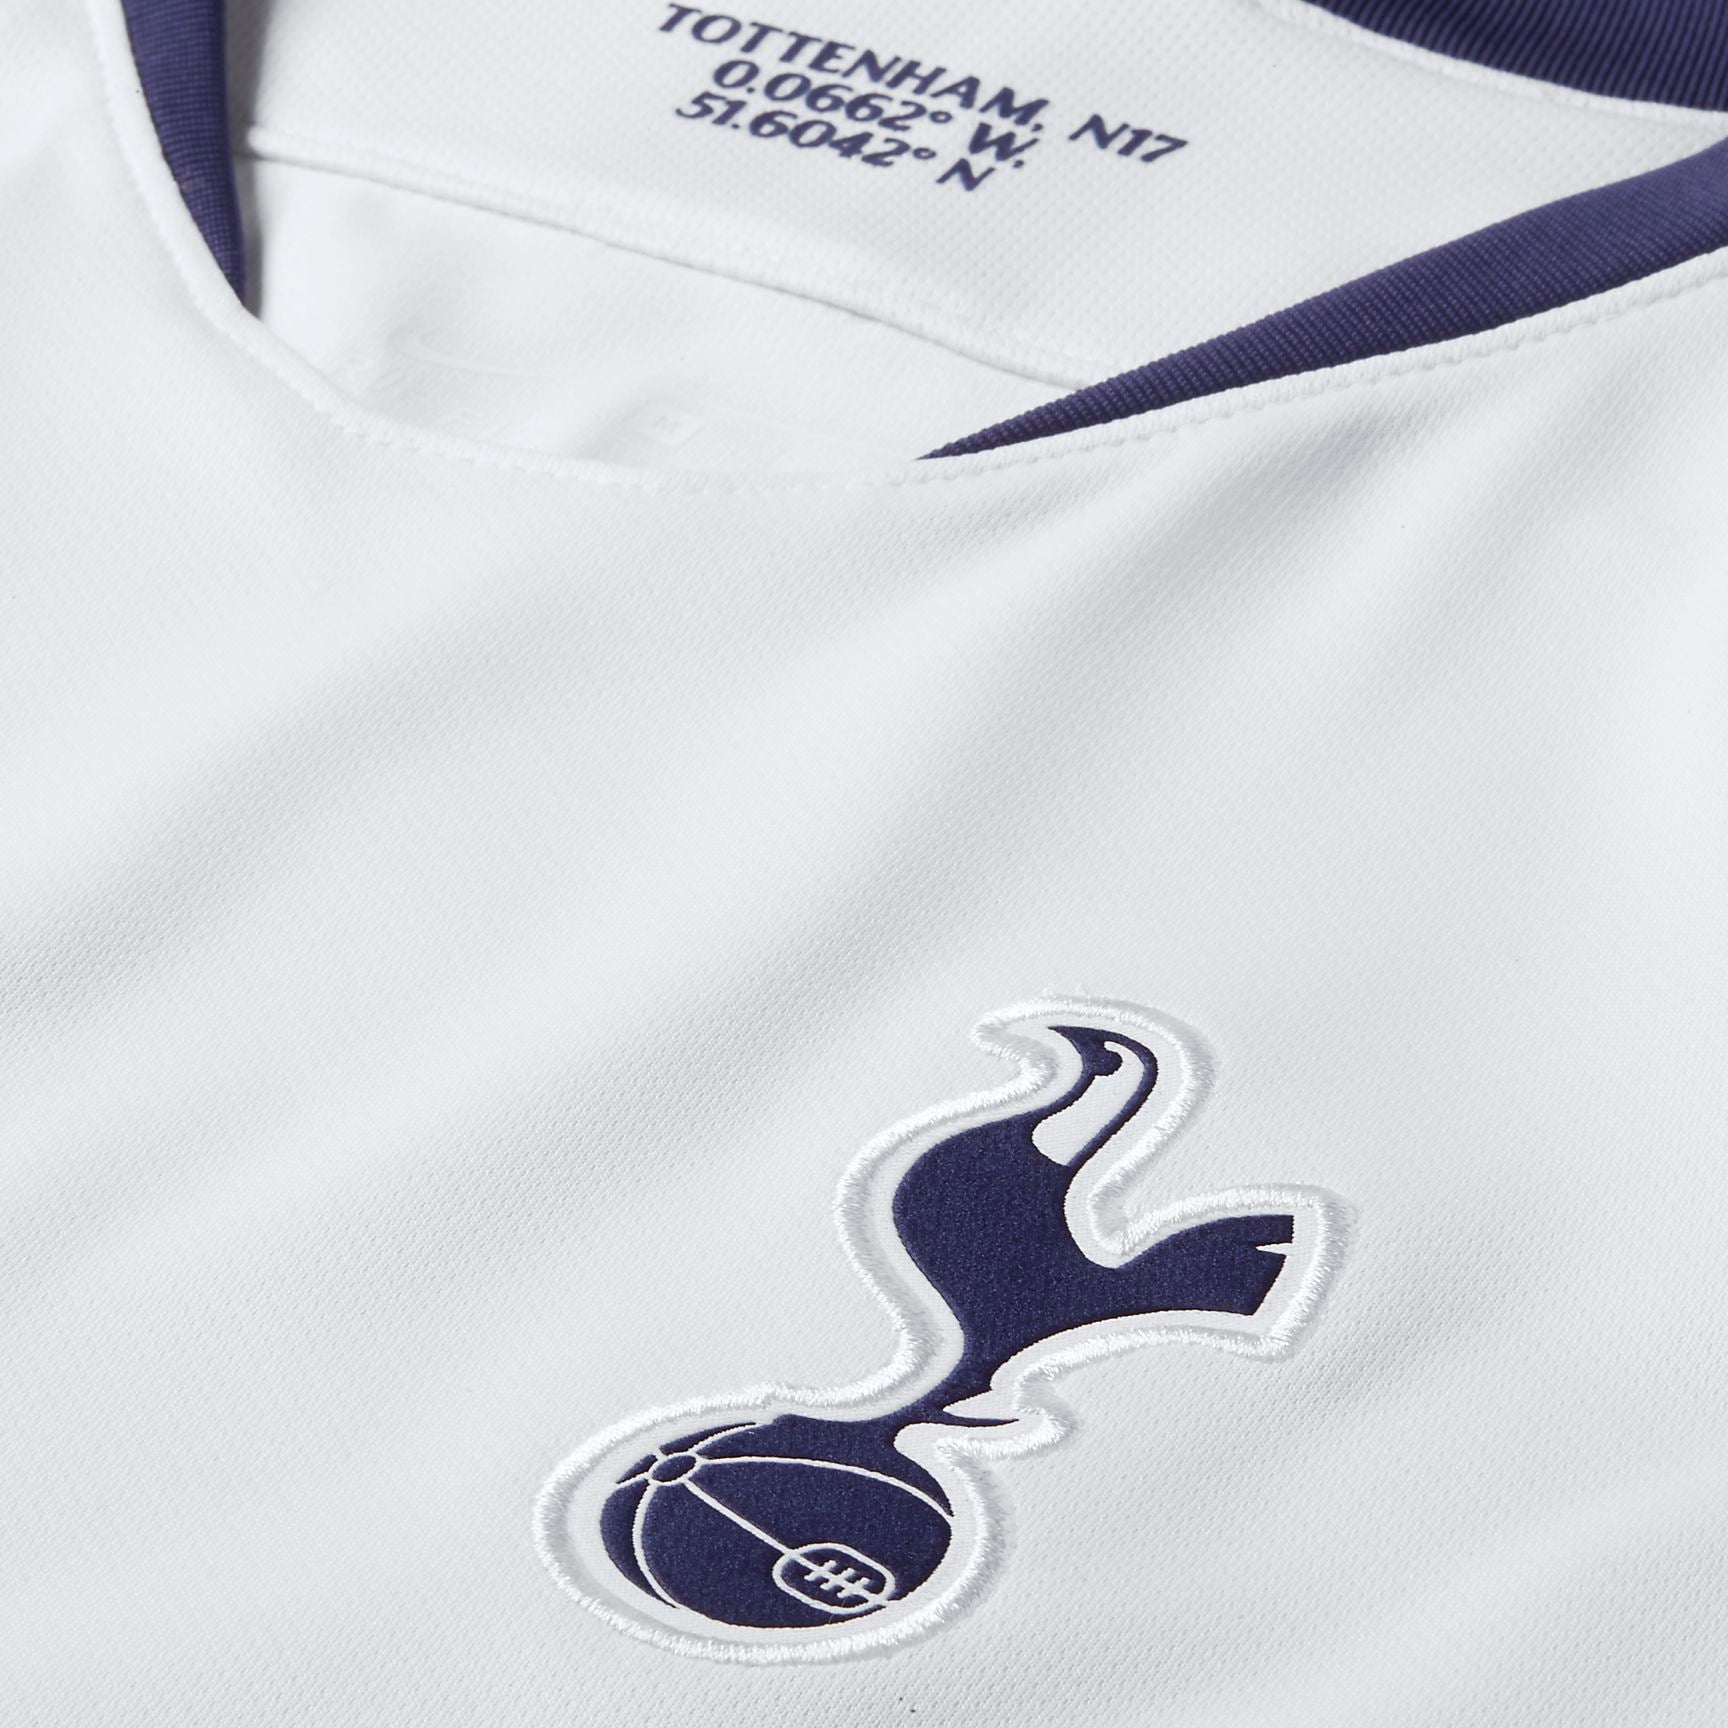 Tottenham Hotspur 2018-19 Away Kit